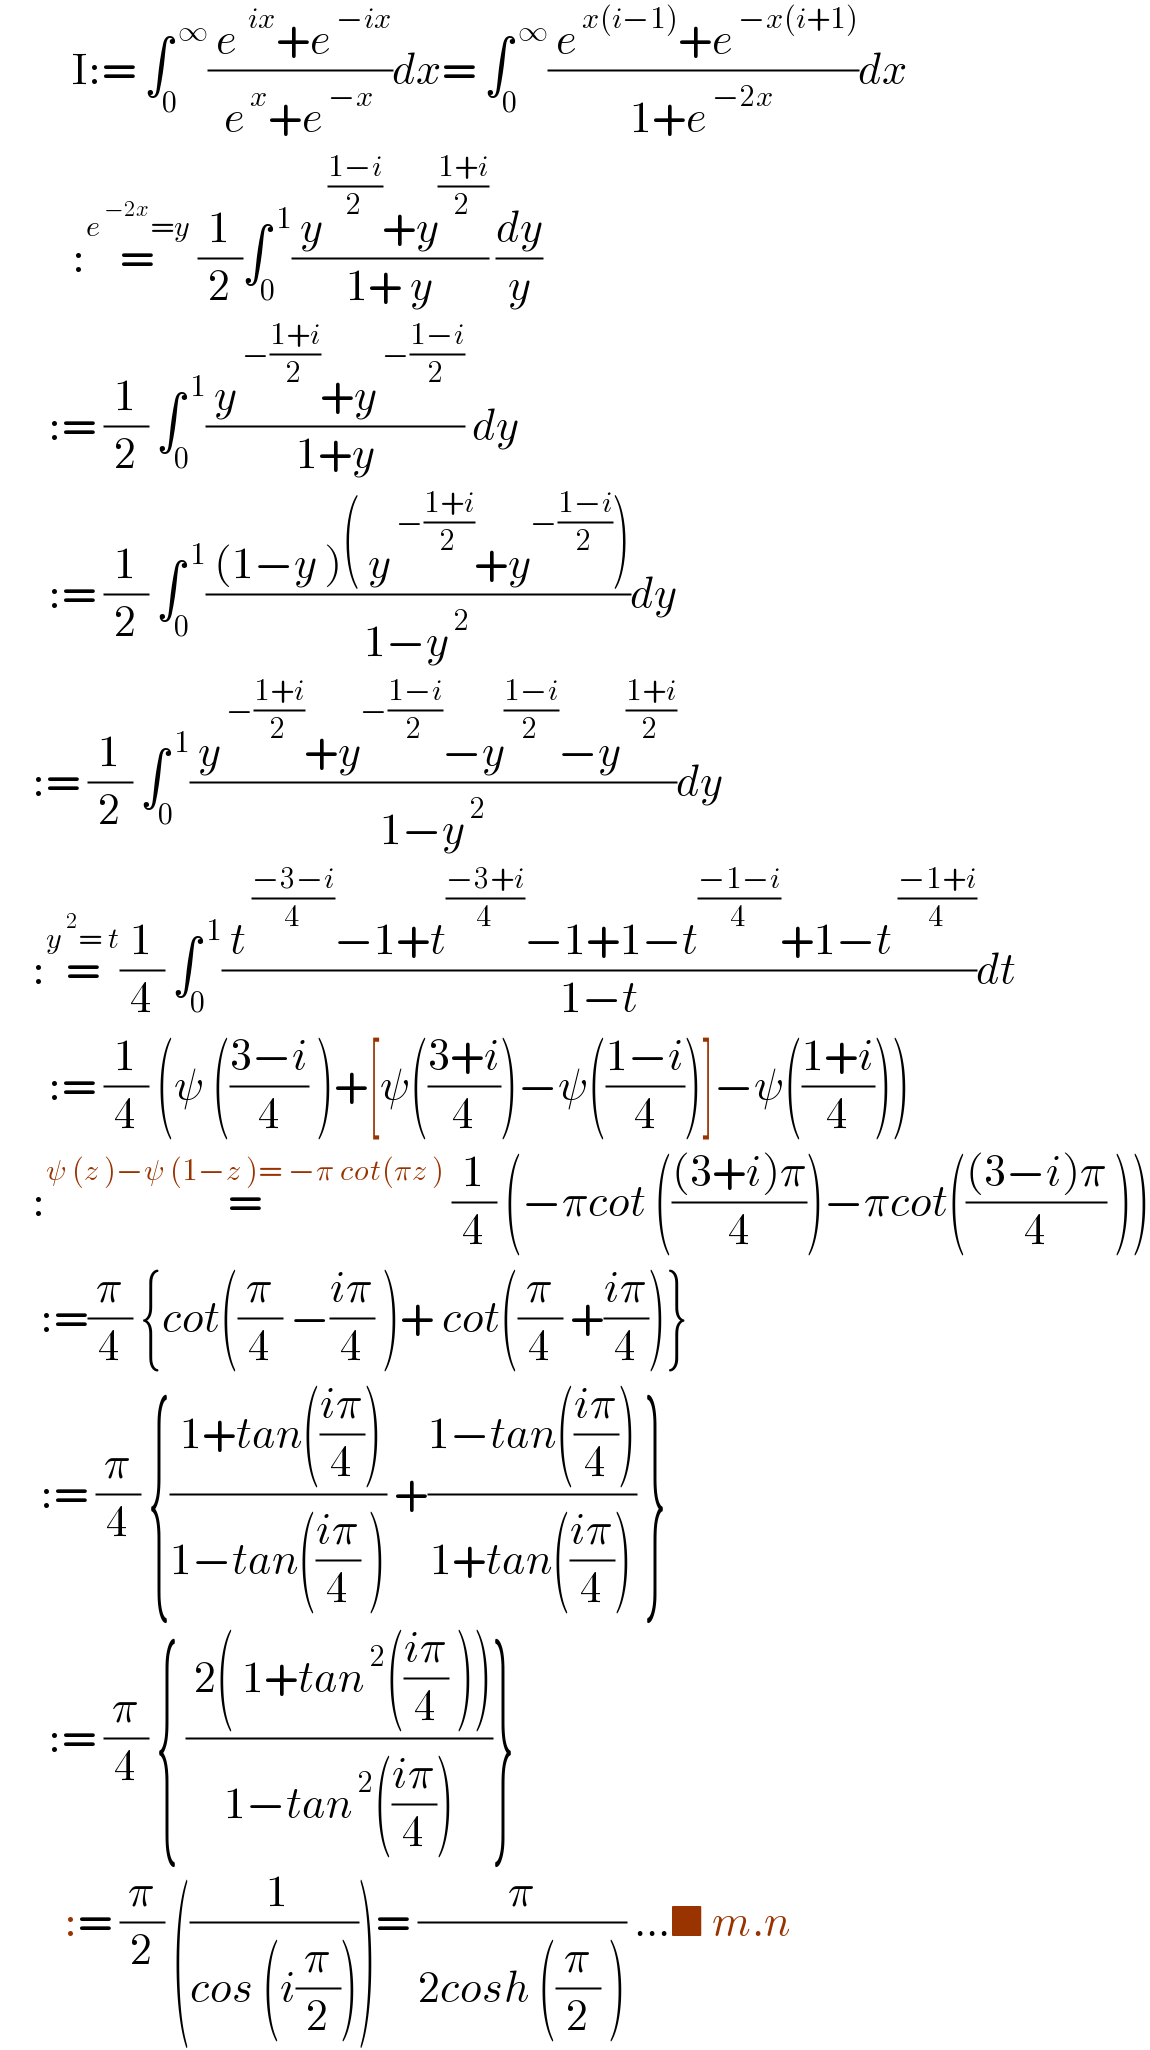          I:= ∫_0 ^( ∞) (( e^(  ix) +e^( −ix) )/(e^( x) +e^( −x) ))dx= ∫_0 ^( ∞) (( e^( x(i−1)) +e^( −x(i+1)) )/(1+e^( −2x) ))dx           :=^(e^( −2x) =y)  (1/2)∫_0 ^( 1) (( y^( ((1−i)/2)) +y^((1+i)/2) )/(1+ y)) (dy/y)        := (1/2) ∫_0 ^( 1) (( y^( −((1+i)/2)) +y^( −((1−i)/2)) )/(1+y)) dy        := (1/2) ∫_0 ^( 1) (( (1−y )( y^( −((1+i)/2)) +y^(−((1−i)/2)) ))/(1−y^( 2) ))dy      := (1/2) ∫_0 ^( 1) (( y^( −((1+i)/2)) +y^(−((1−i)/2)) −y^((1−i)/2) −y^( ((1+i)/2)) )/(1−y^( 2) ))dy      :=^(y^( 2) = t) (1/4) ∫_0 ^( 1) (( t^( ((−3−i)/4)) −1+t^((−3+i)/4) −1+1−t^((−1−i)/4) +1−t^( ((−1+i)/4)) )/(1−t))dt        := (1/4) (ψ (((3−i)/4) )+[ψ(((3+i)/4))−ψ(((1−i)/4))]−ψ(((1+i)/4)))      :=^(ψ (z )−ψ (1−z )= −π cot(πz ))  (1/4) (−πcot ((((3+i)π)/4))−πcot((((3−i)π)/4) ))       :=(π/4) {cot((π/4) −((iπ)/4) )+ cot((π/4) +((iπ)/4))}       := (π/4) {(( 1+tan(((iπ)/4)))/(1−tan(((iπ)/4) ))) +((1−tan(((iπ)/4)))/(1+tan(((iπ)/4)))) }        := (π/4) { (( 2( 1+tan^( 2) (((iπ)/4) )))/(1−tan^( 2) (((iπ)/4))))}          := (π/2) ((( 1)/(cos (i(π/2)))))= (π/(2cosh ((π/2) ))) ...■ m.n  